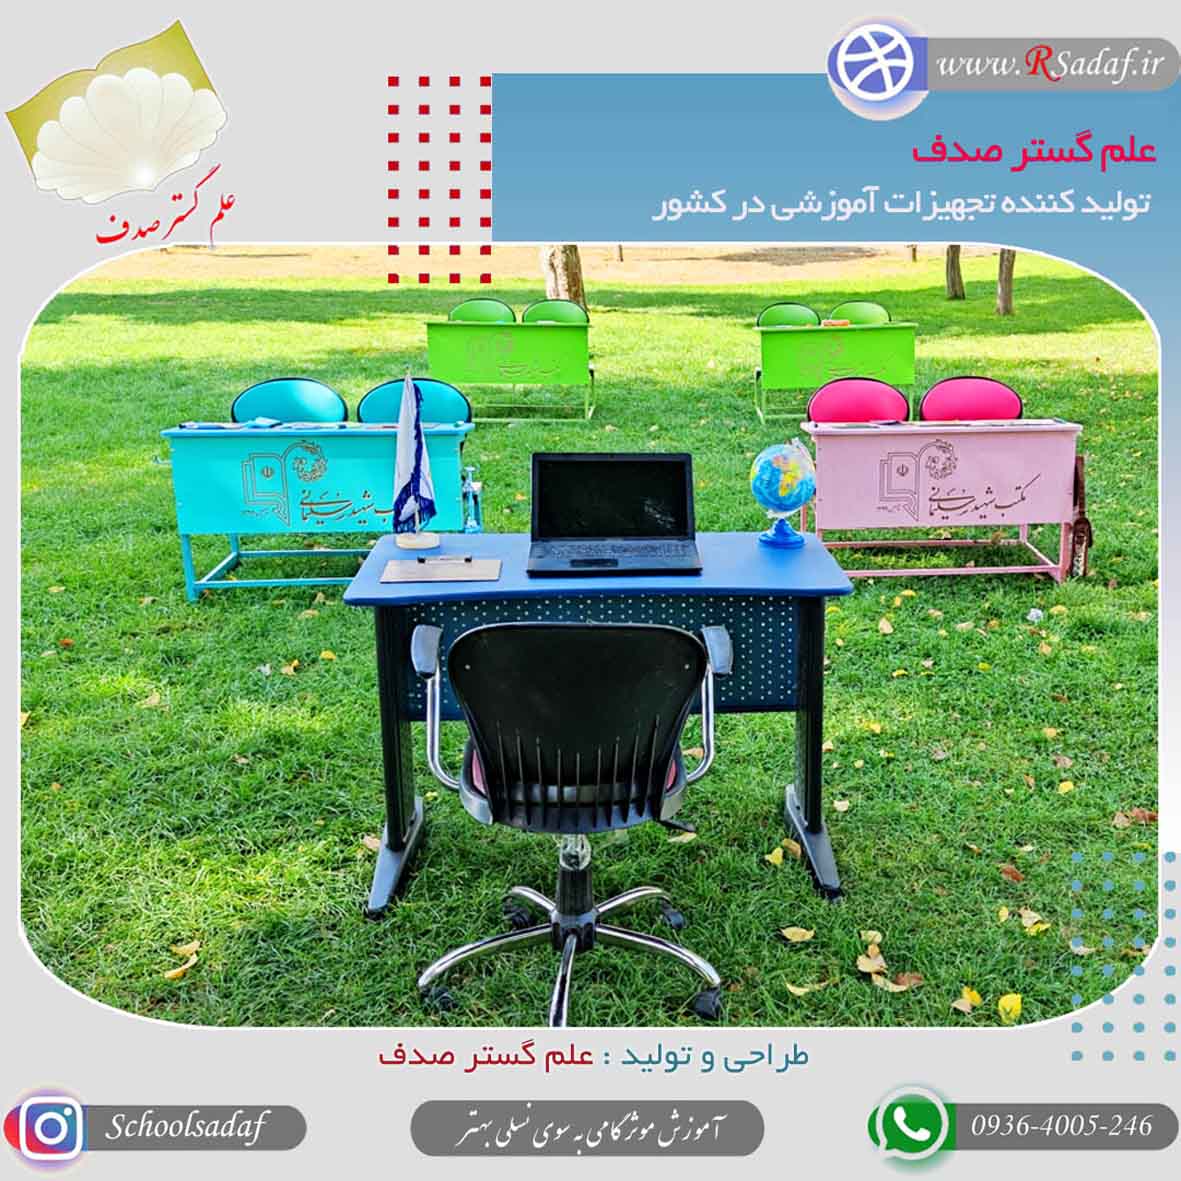 نمونه پروژه تجهیزات مدرسه در اصفهان